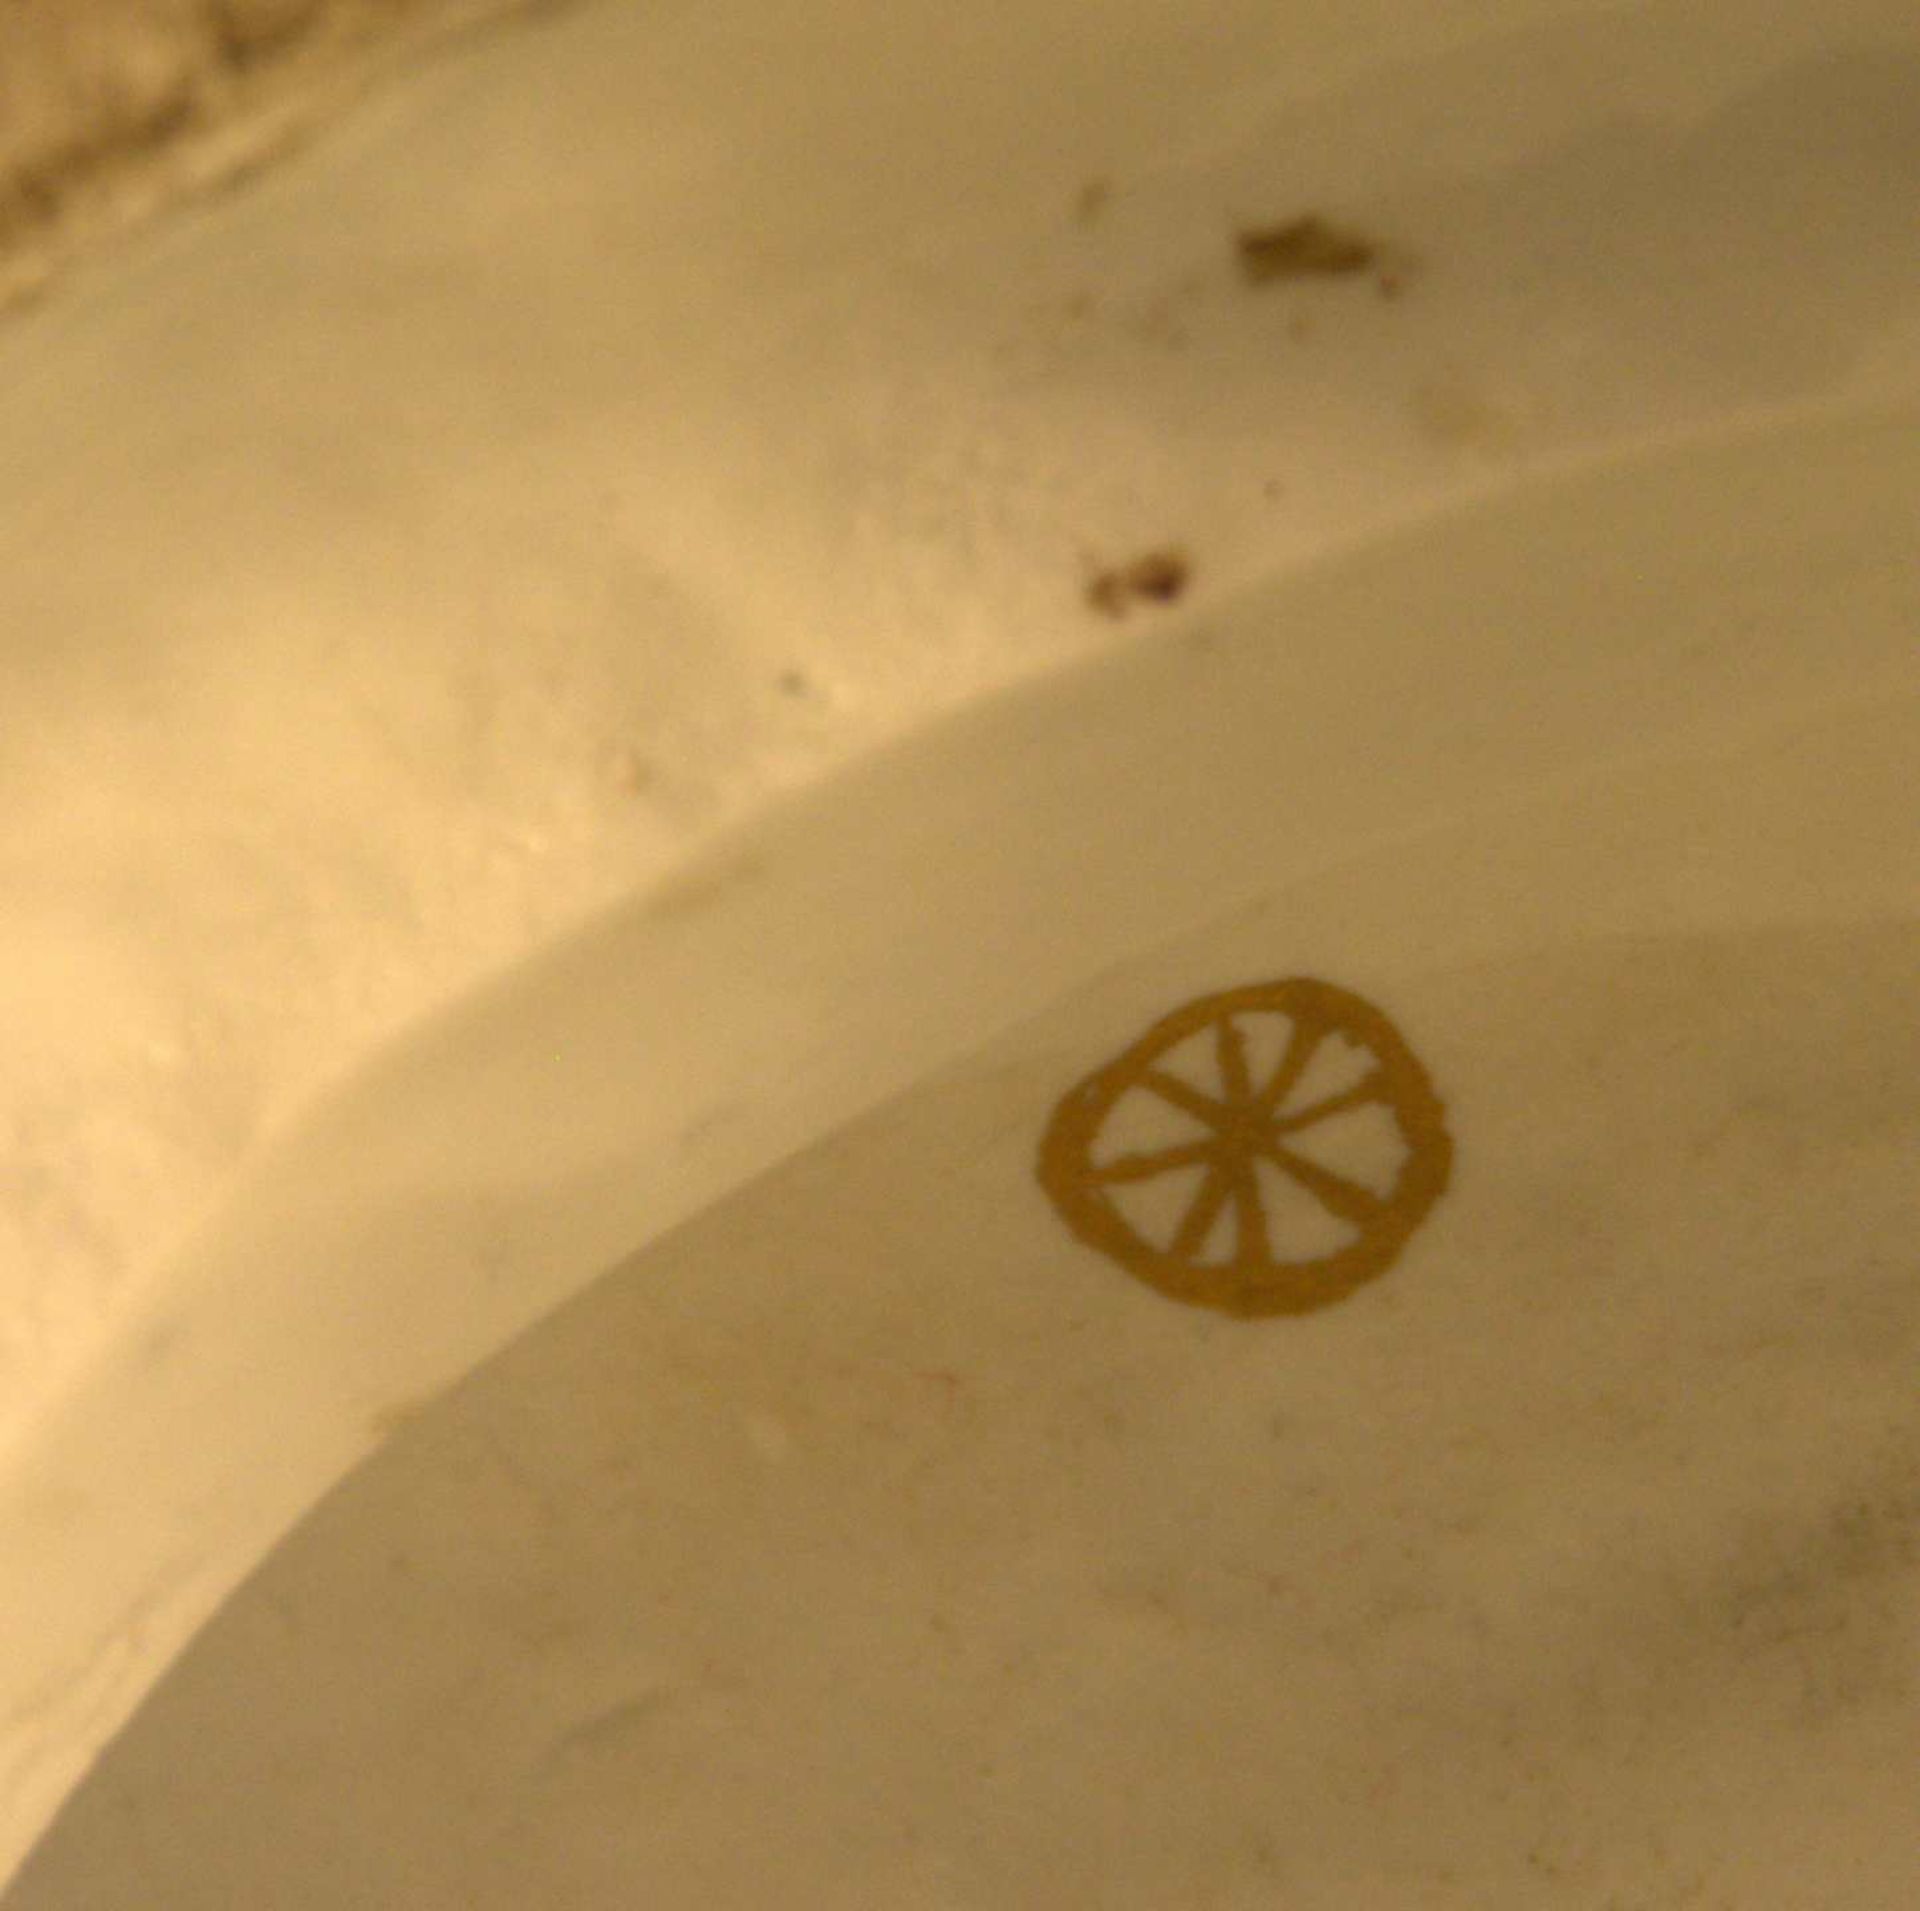 Porzellangruppe, "Fußwaschung der Diane", Höchst?goldene Radmarke, Jahrhundertwende, - Bild 4 aus 4